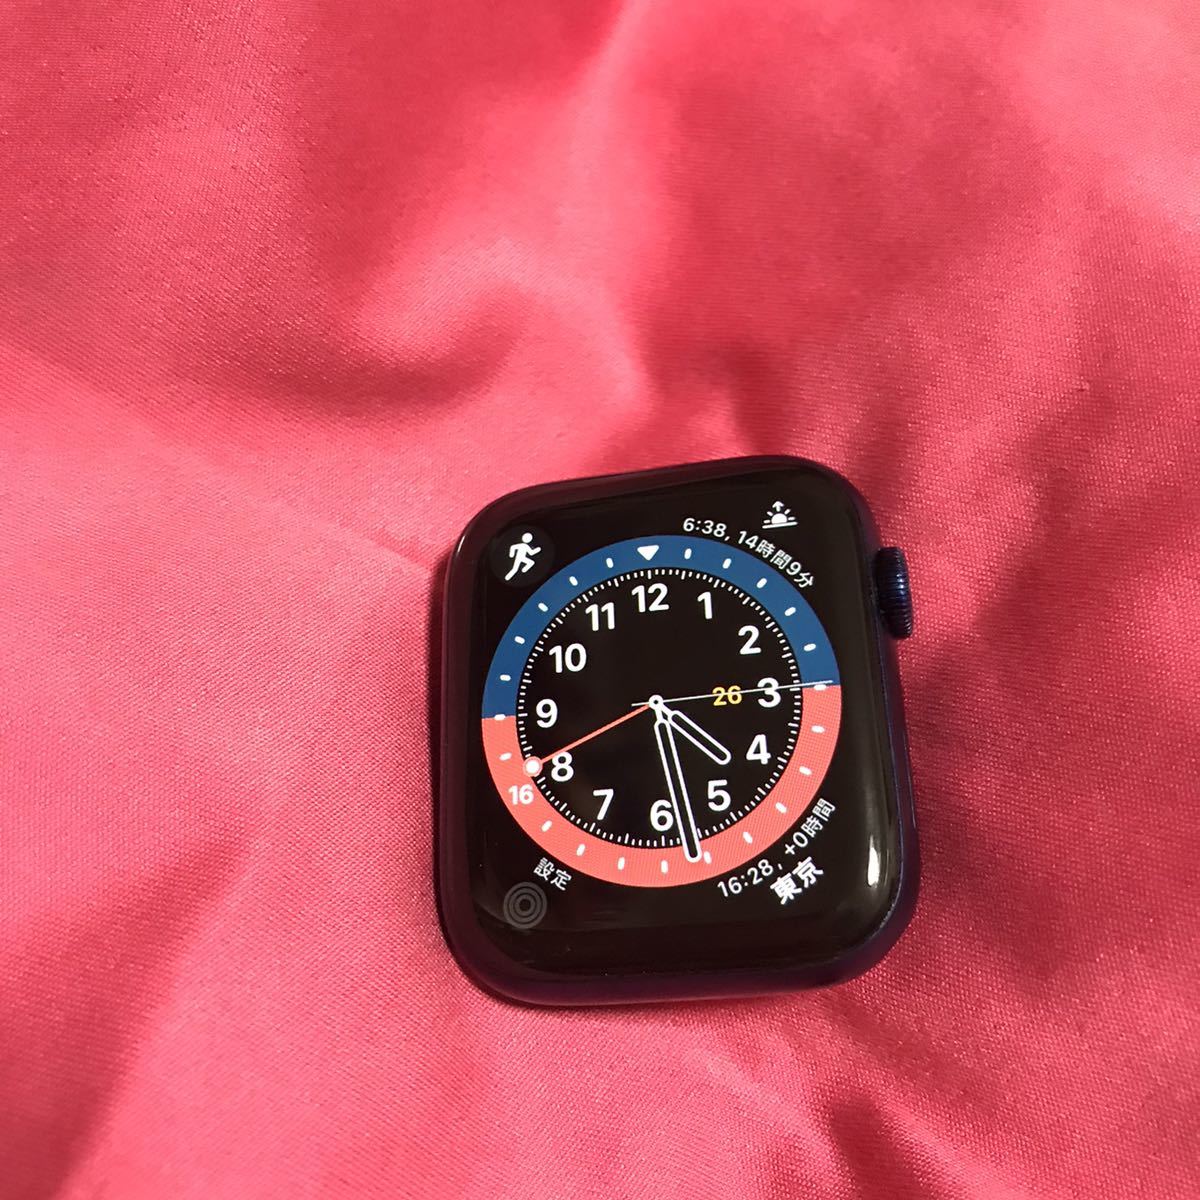 Apple Watch Series 6 (GPSモデル) 44mm ブルーアルミニウムケース アップルウォッチ バッテリー87% バンド、cable無